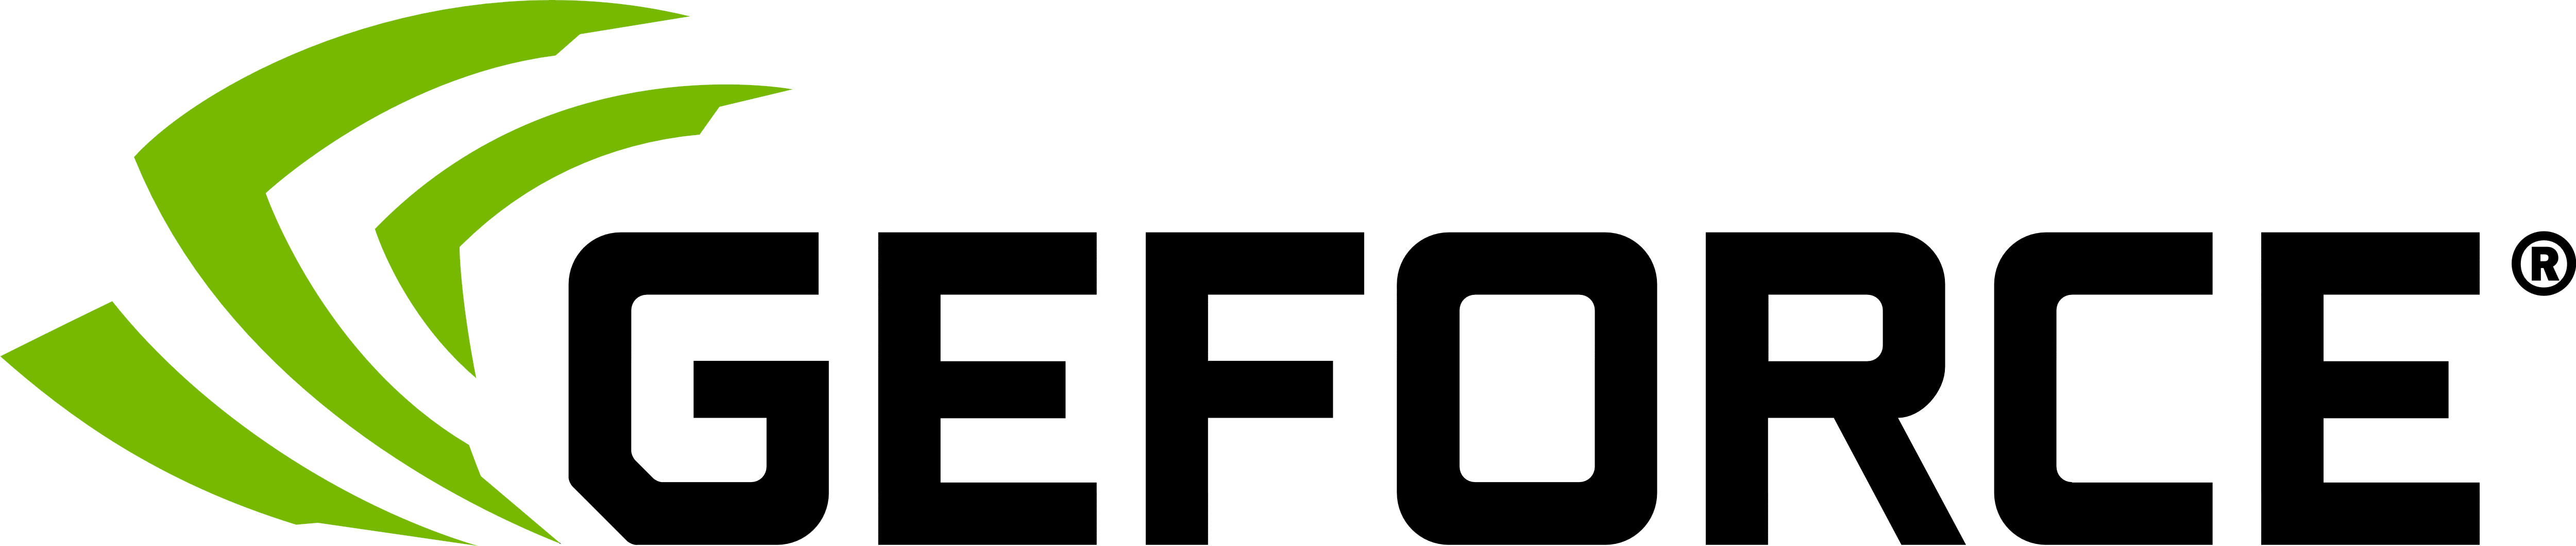 GeForce Logo - GeForce – Logos Download